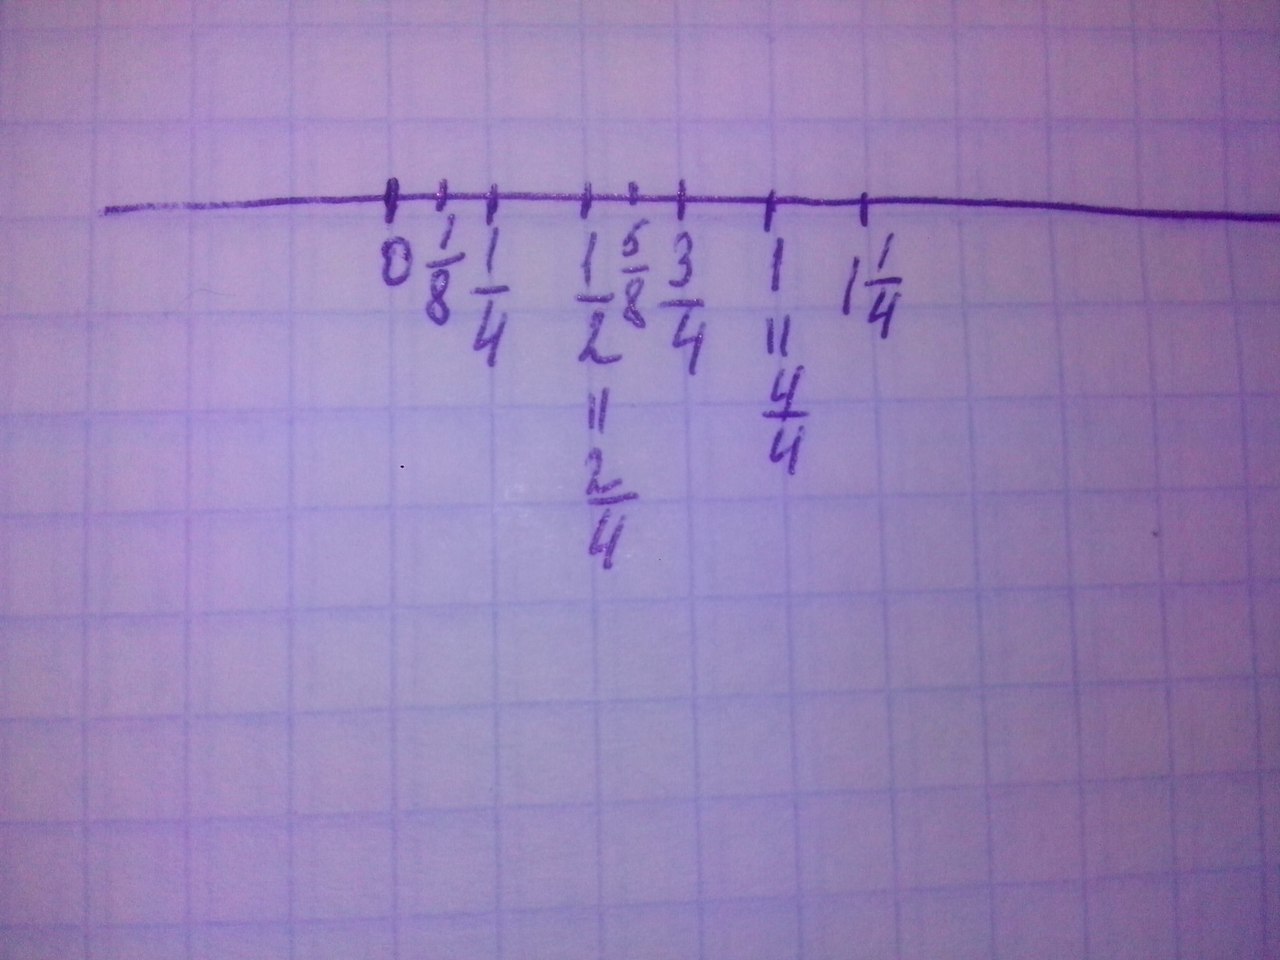 1.0 1.4. Изобразите на координатной оси с единичным отрезком 4 см точки 0. Отметьте на координатной оси точки а 1/4 в -3/4. 1/2 На координатной оси. Изобразите на координатной оси с единичным отрезком 4 см 1/8.